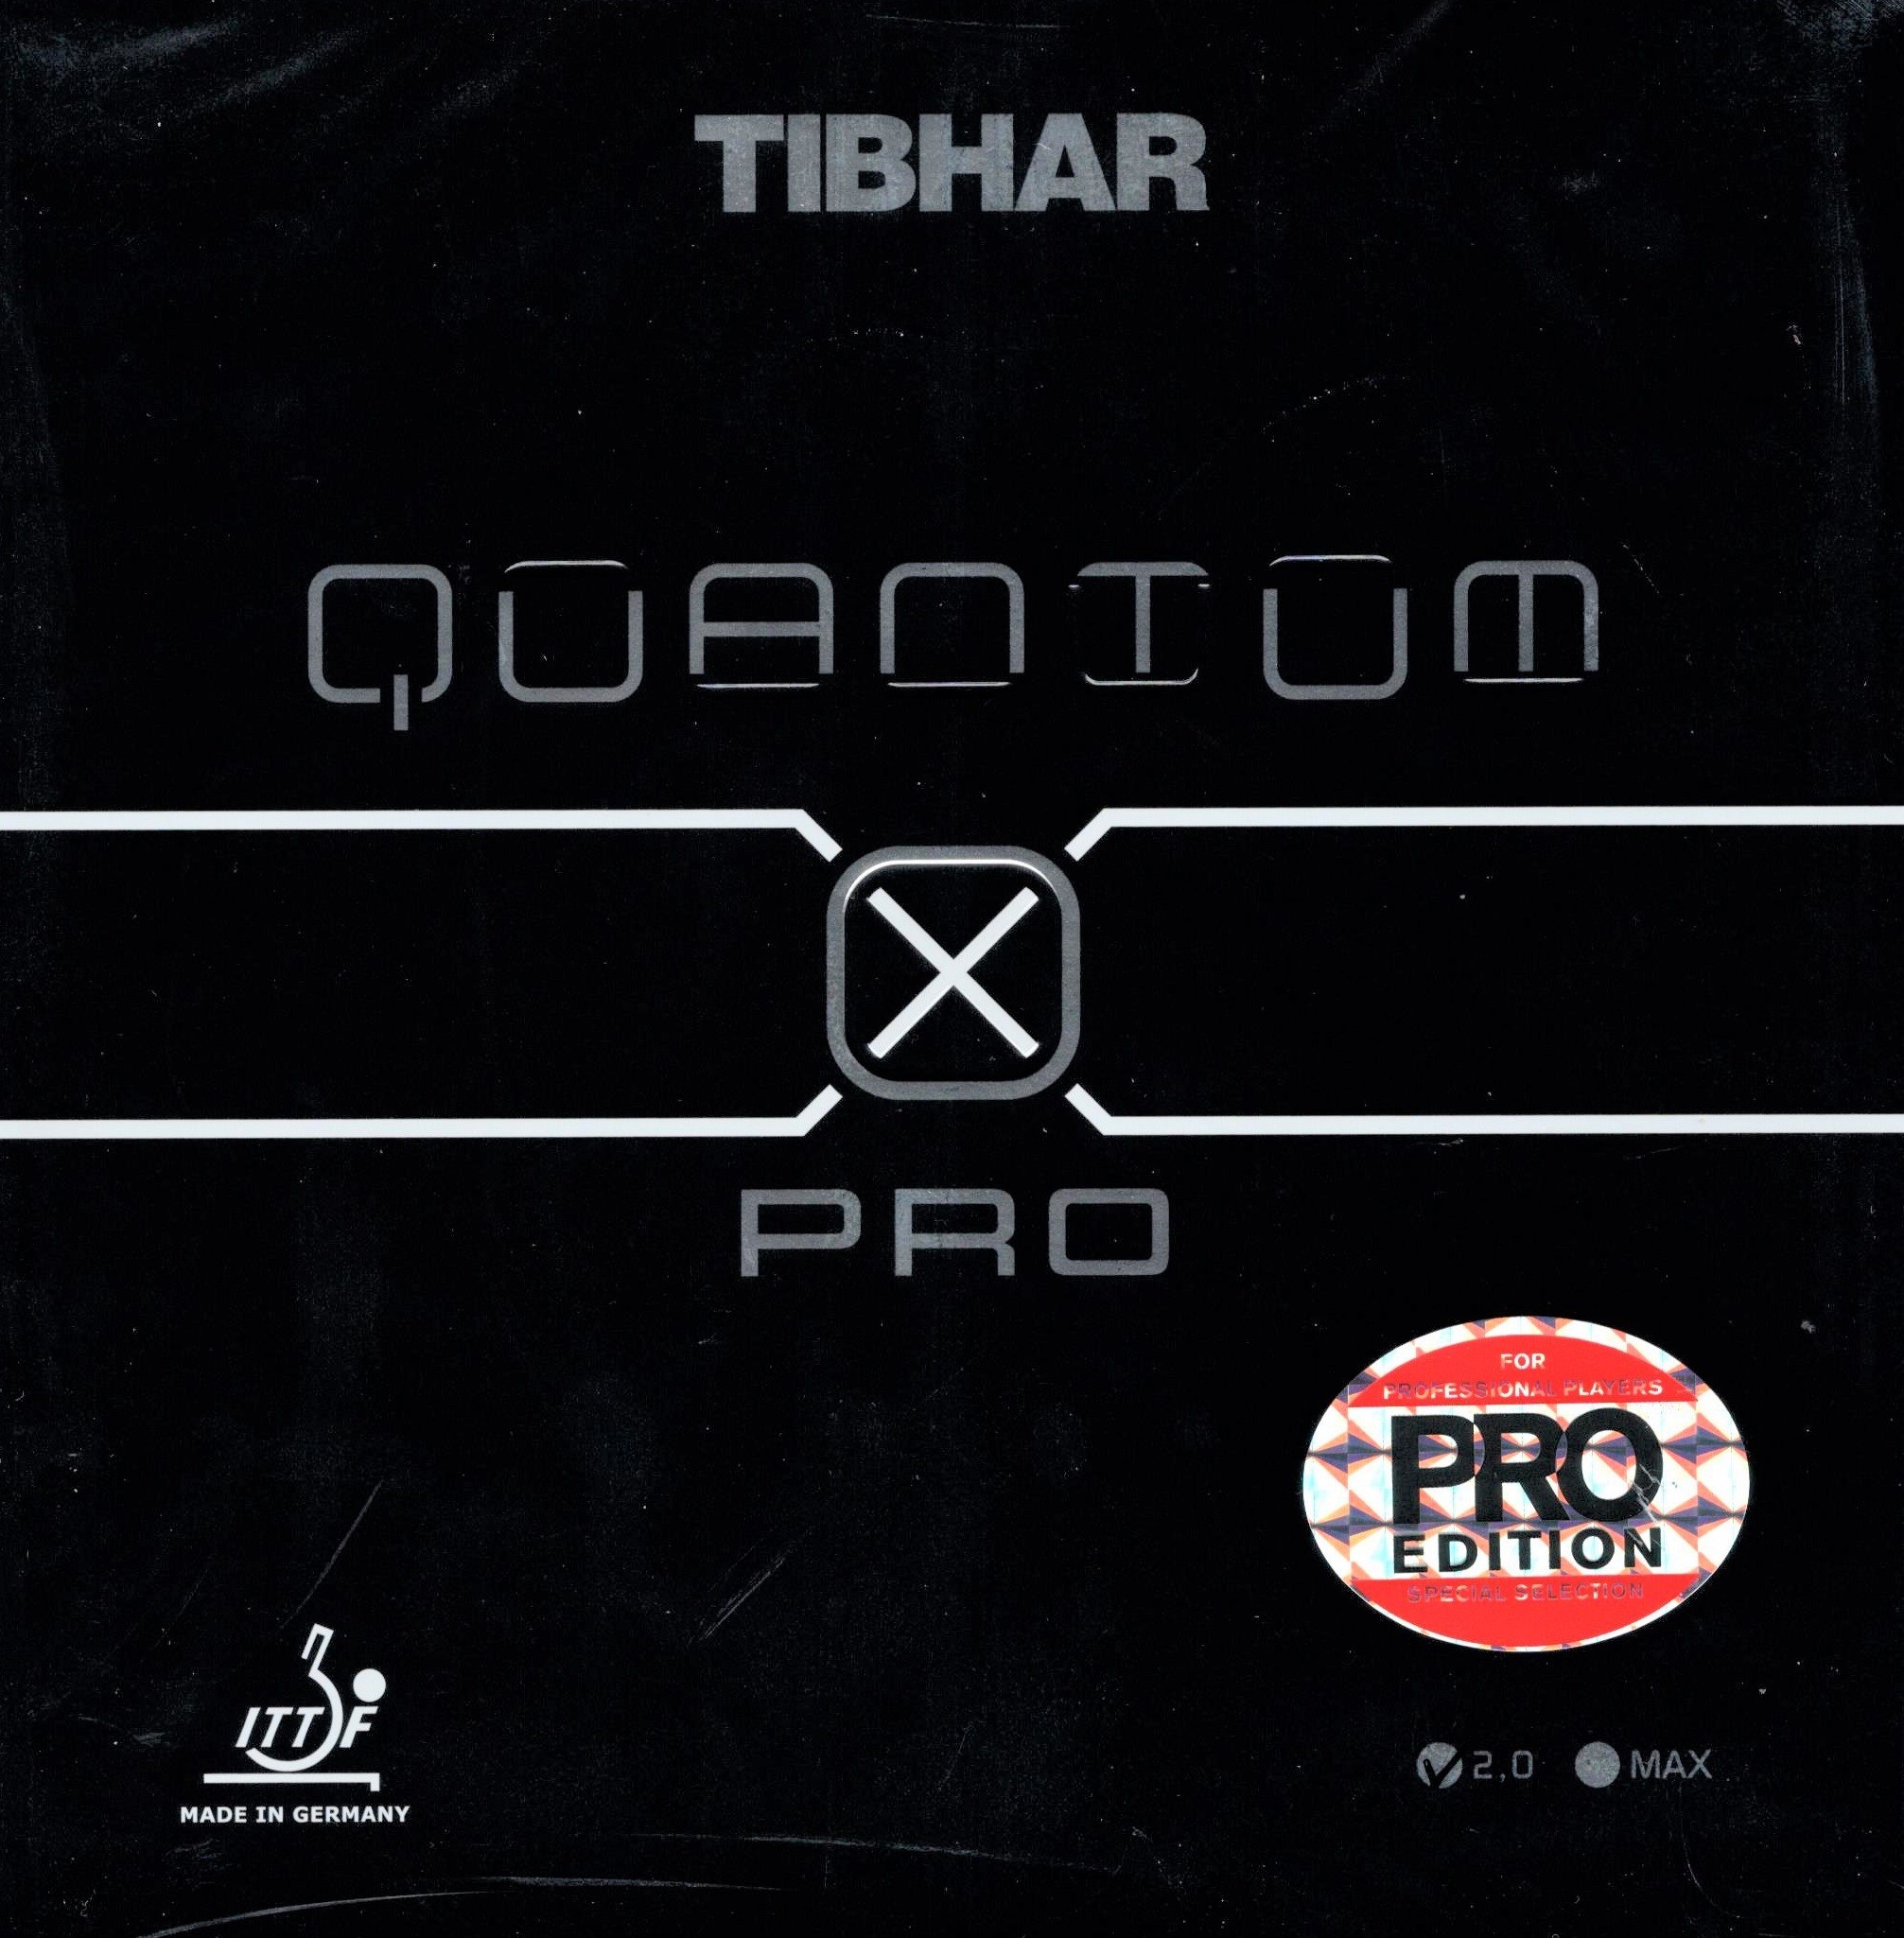 Tibhar Quantum X PRO Pro Edition